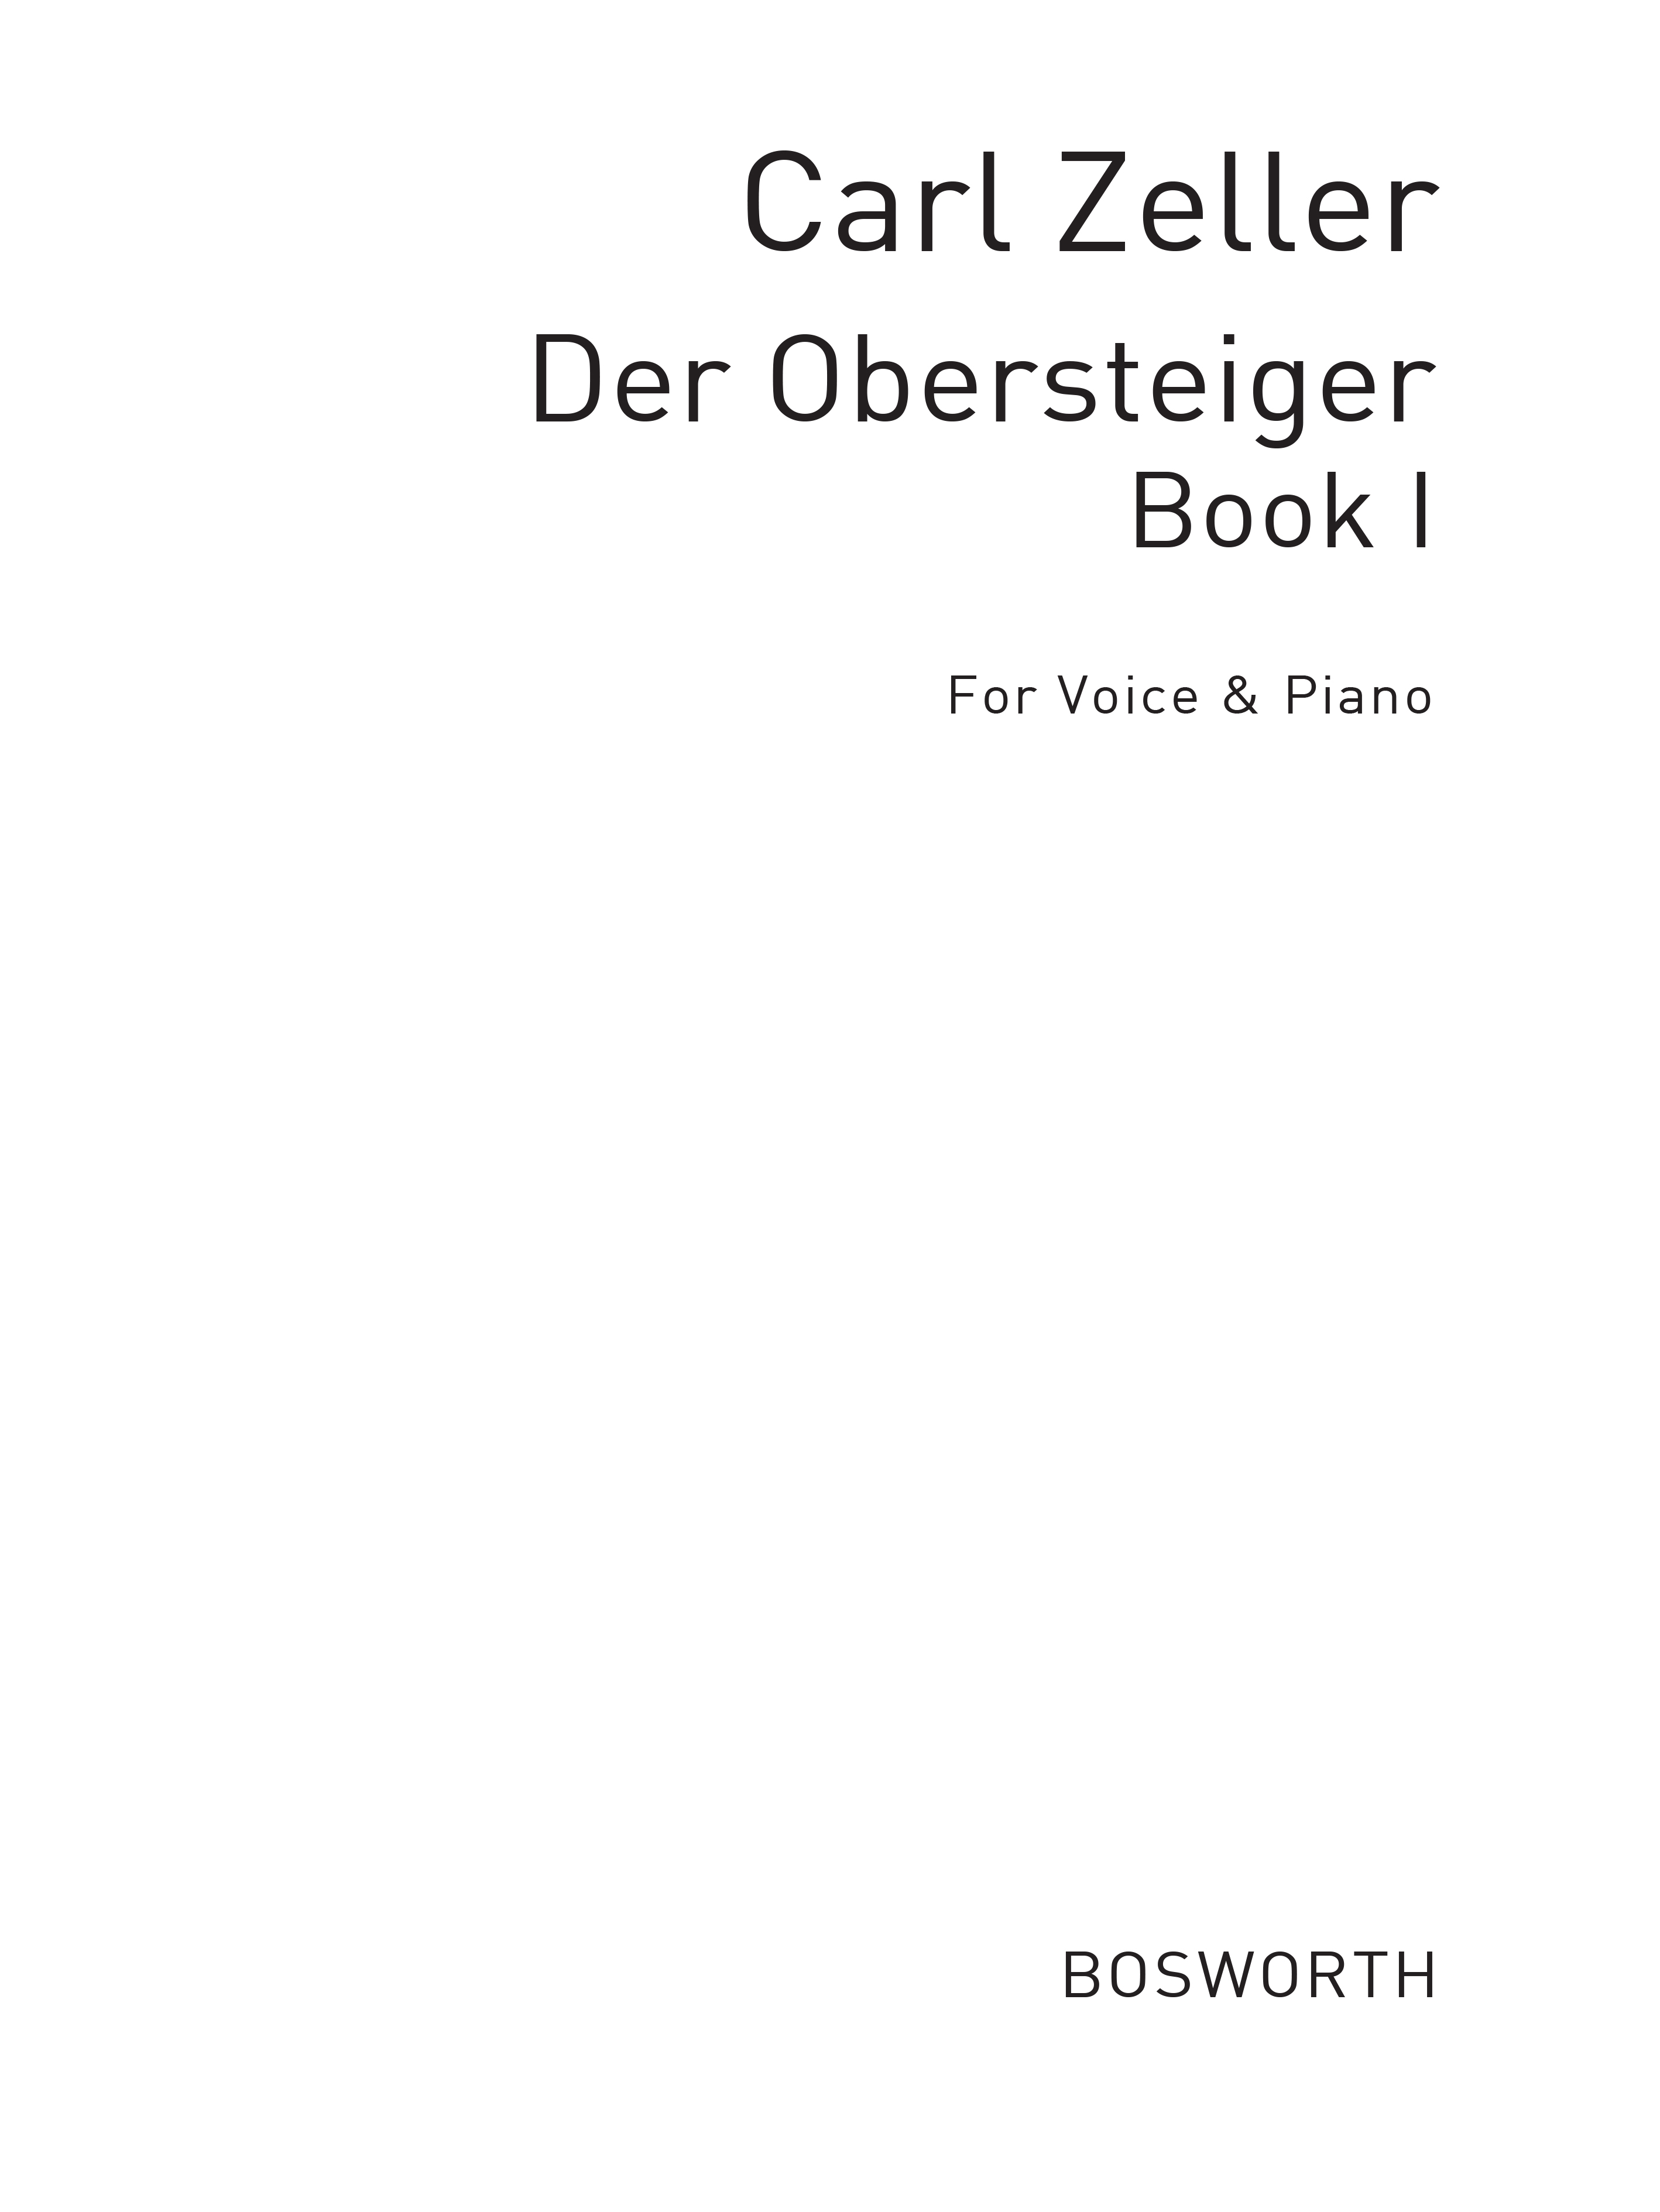 Zeller, C Der Obersteiger Book 1 (German Lyrics) Vce/Pf